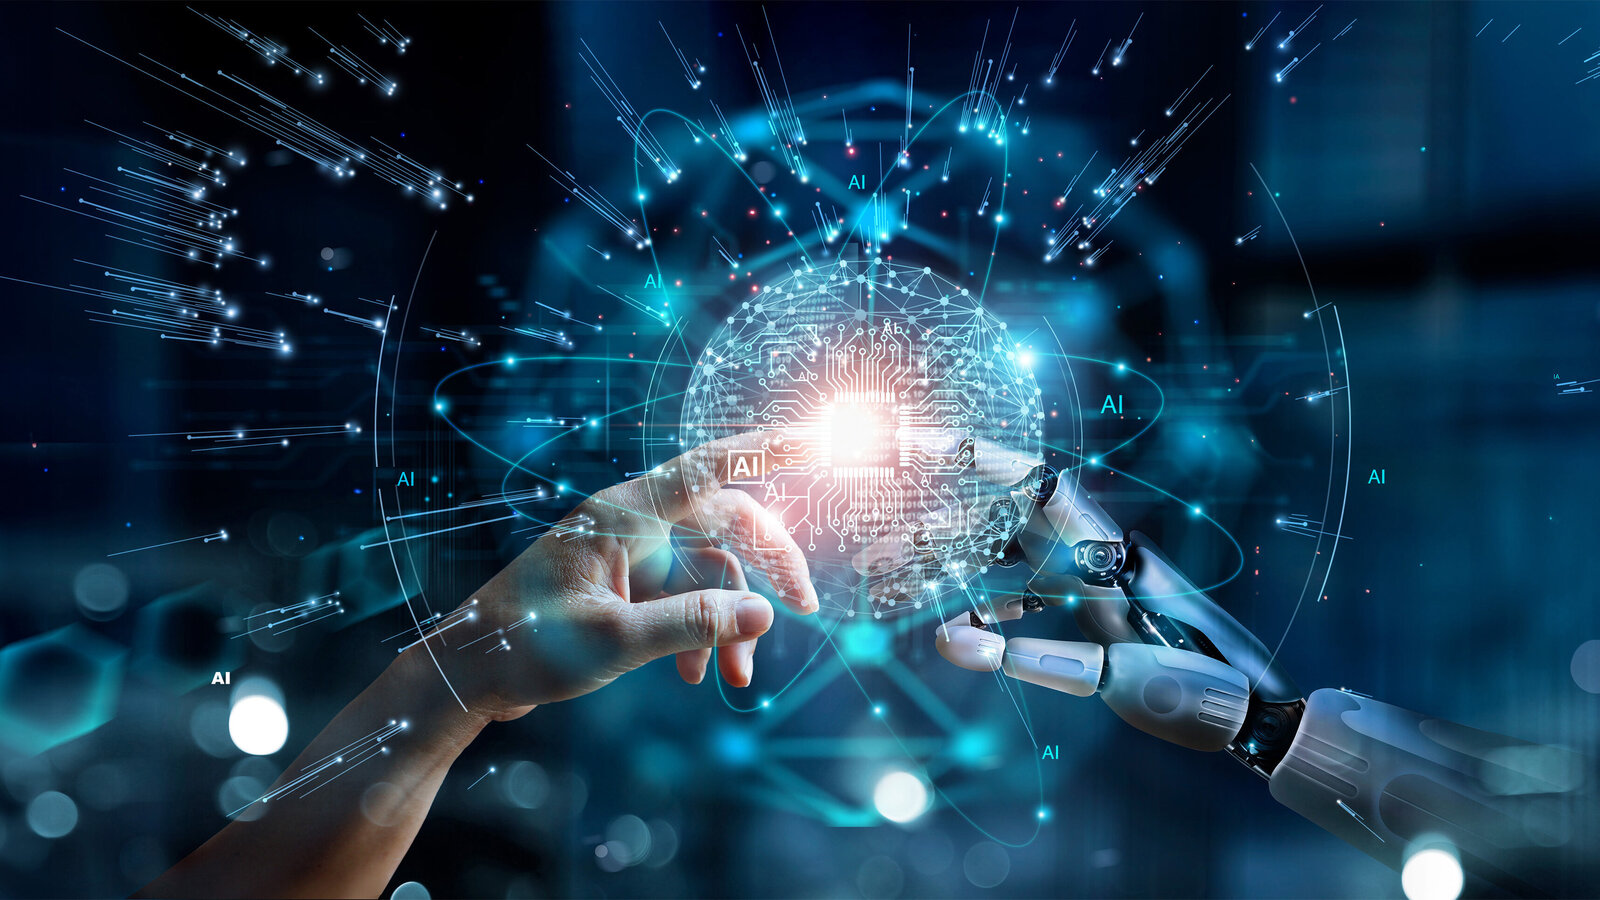 Ein futuristisches Bild, das die Interaktion zwischen einer menschlichen Hand und einer Roboterhand zeigt, umgeben von digitalen Netzwerken und elektronischen Schaltkreisen in blauen und weißen Tönen, die die fortschreitende Integration von Mensch und Technologie symbolisieren.